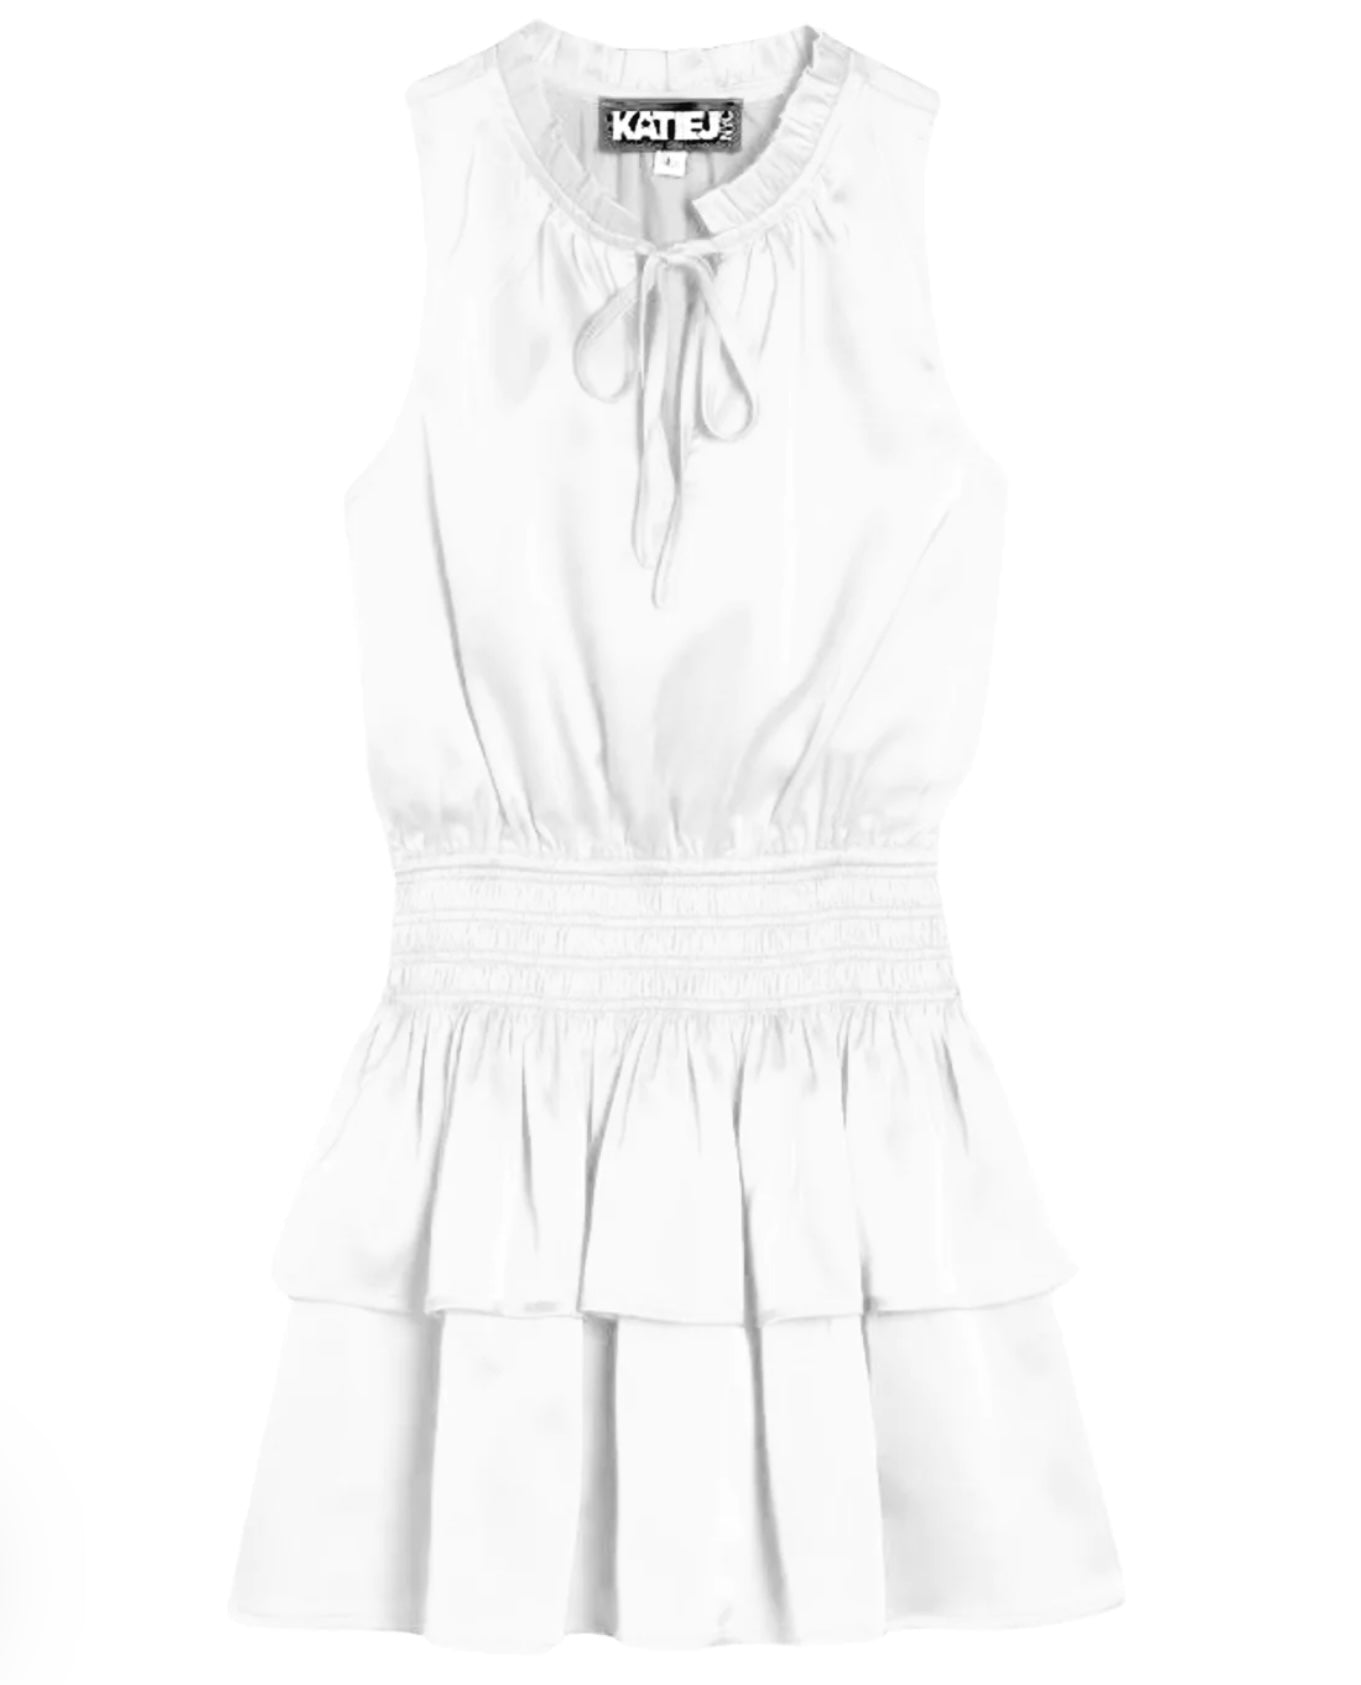 Katie J NYC  Junior Becca Satin Dress - White